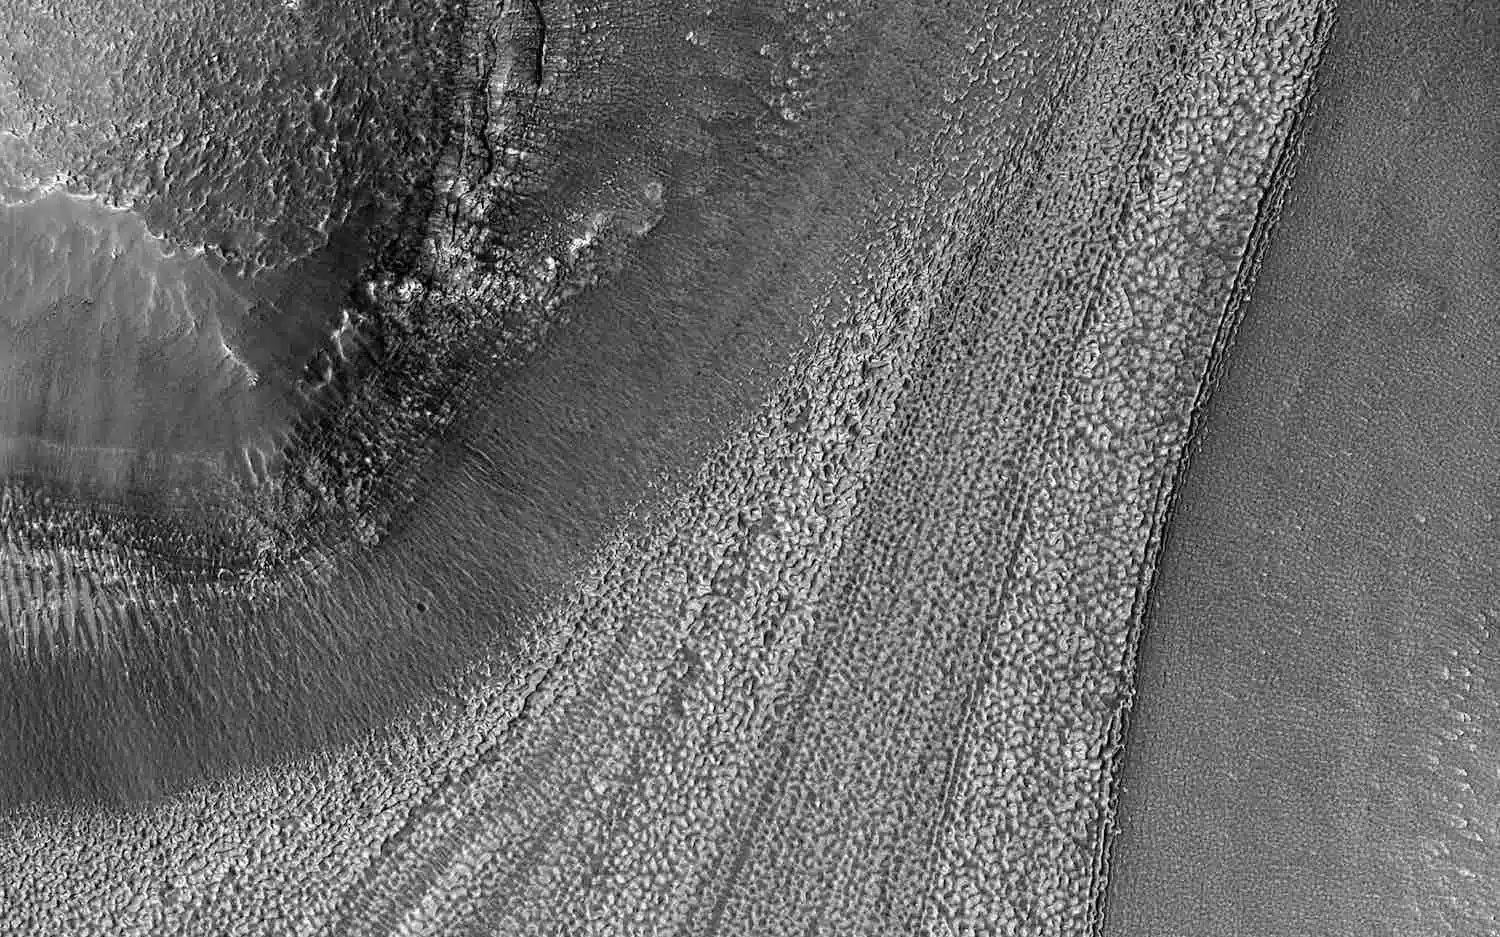 NASA captura imagens de linhas estranhas esculpidas na superfície de Marte